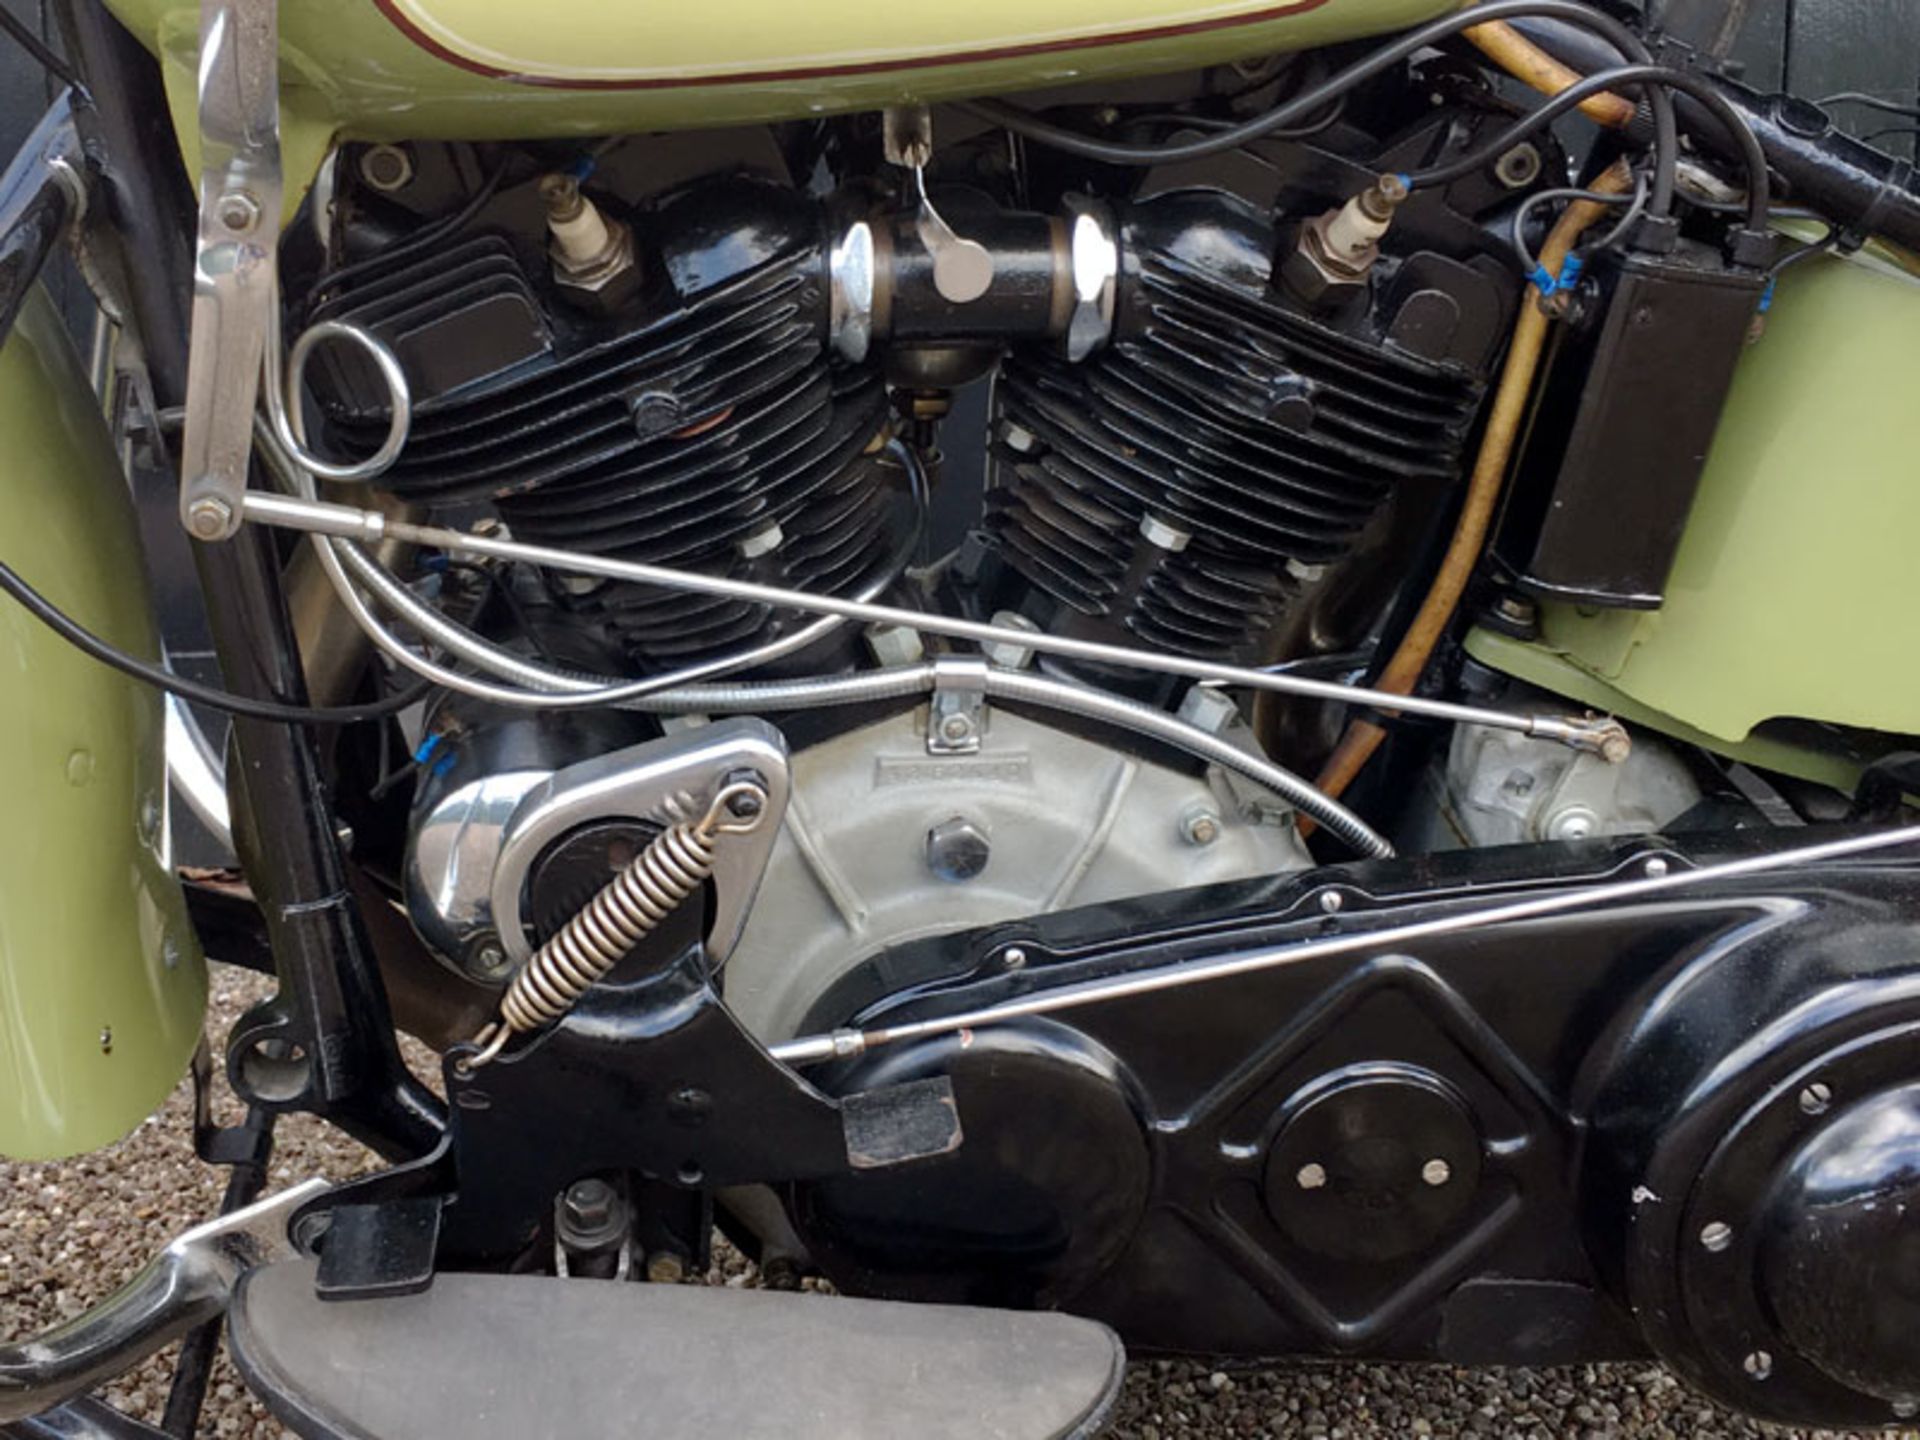 1942 Harley Davidson EL 1000 - Image 4 of 5